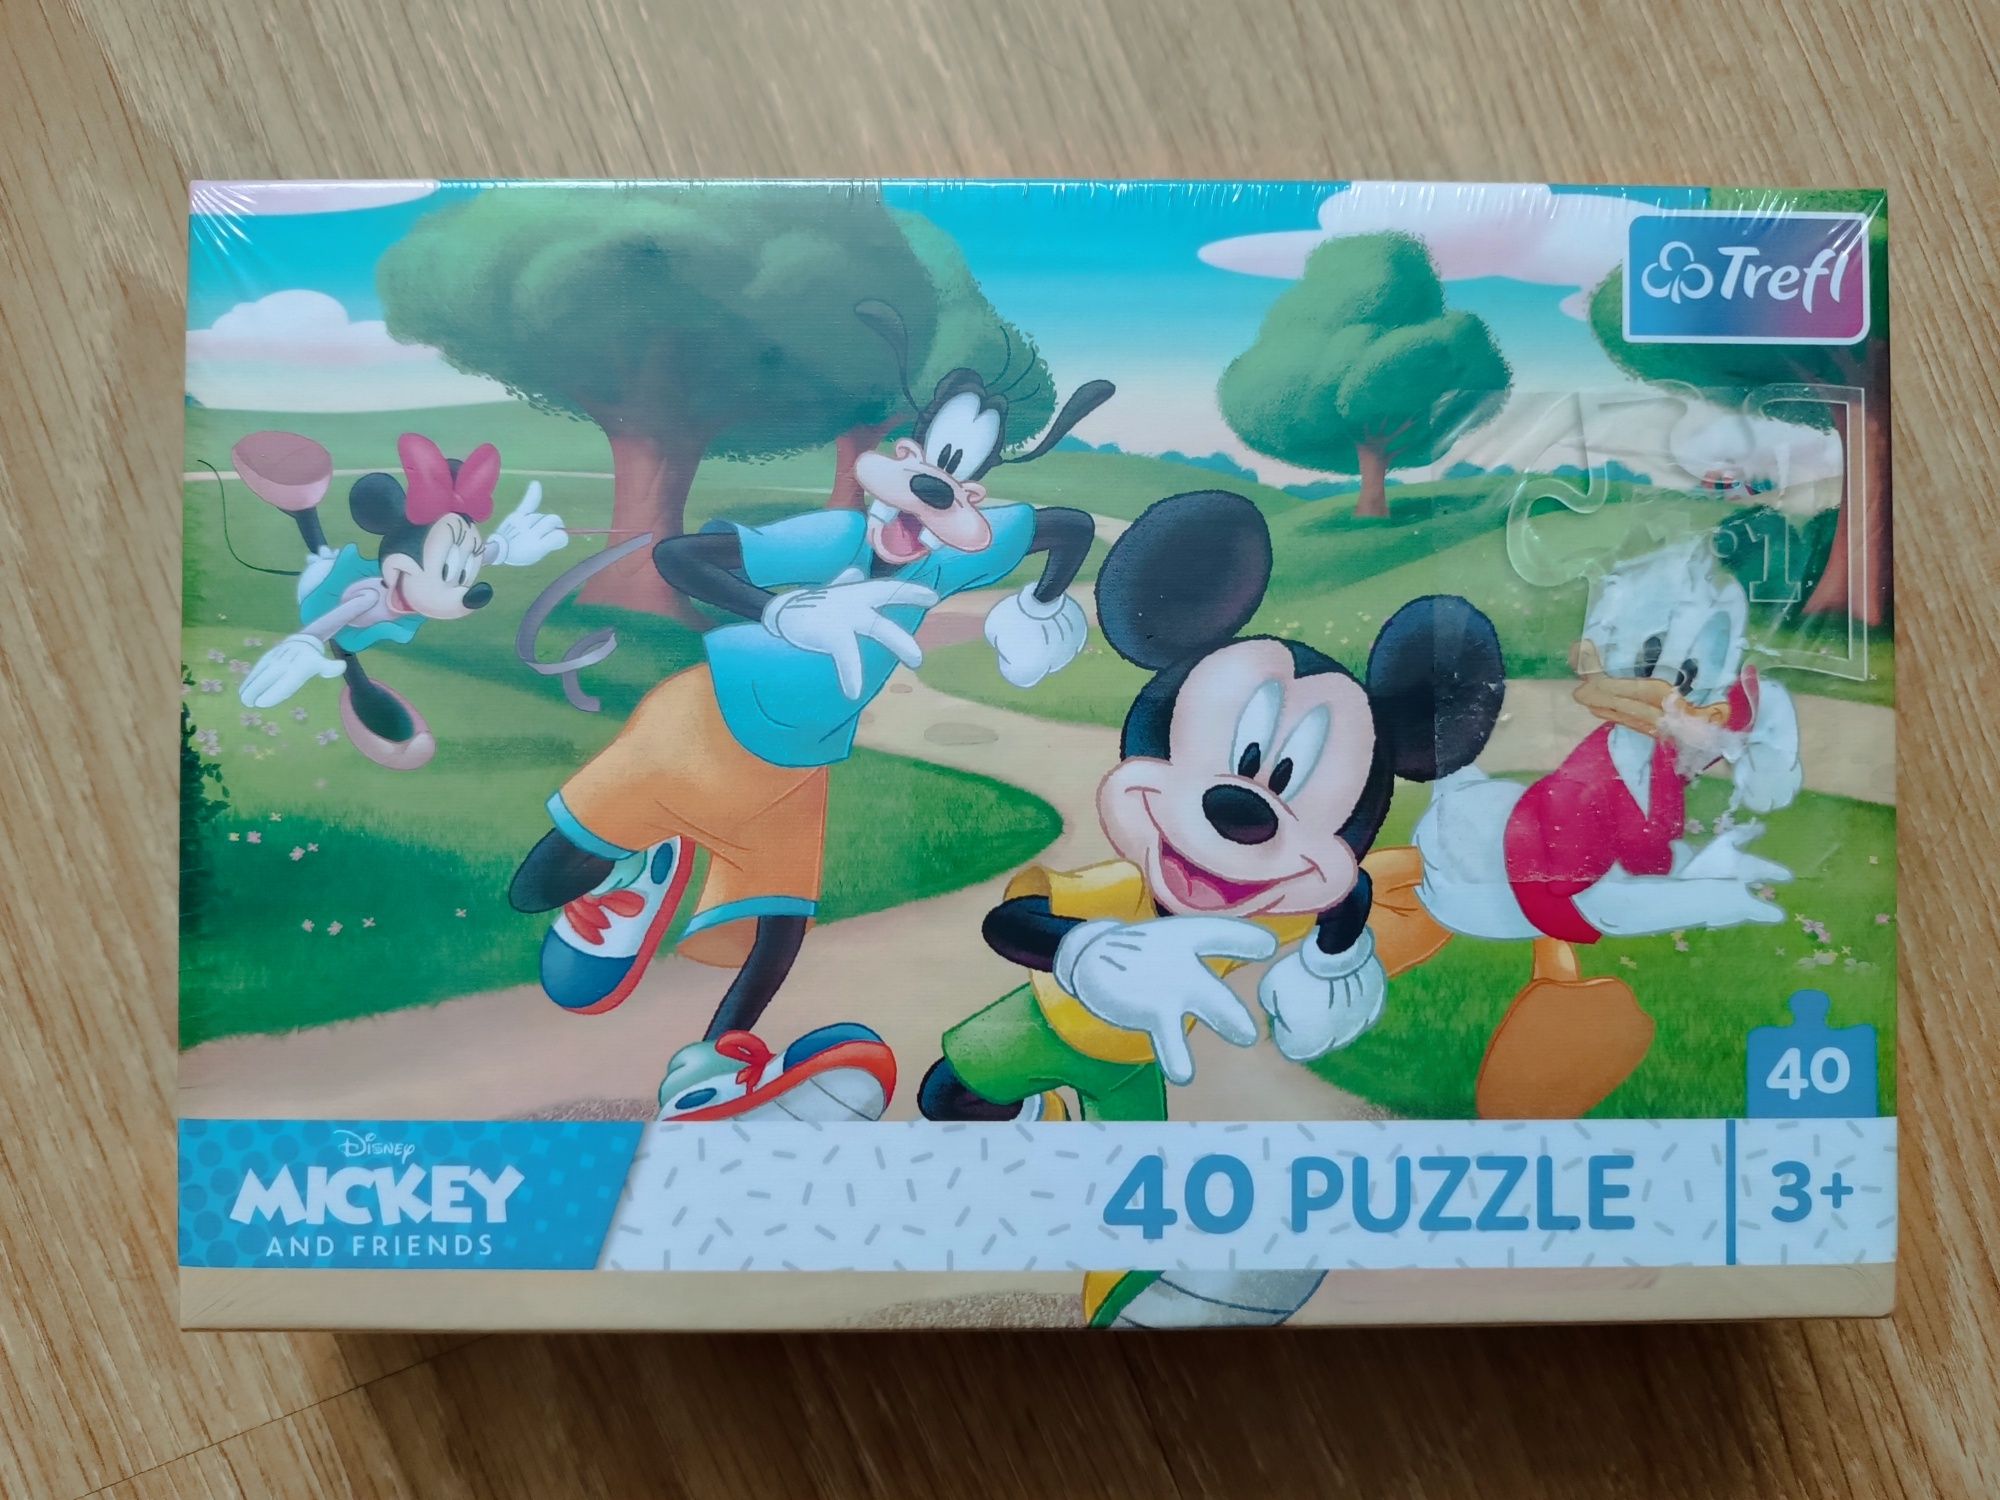 Puzzle TREFL Mickey and Friends, 40sztuk, 3+, NOWE! w folii 
Sprzedaż